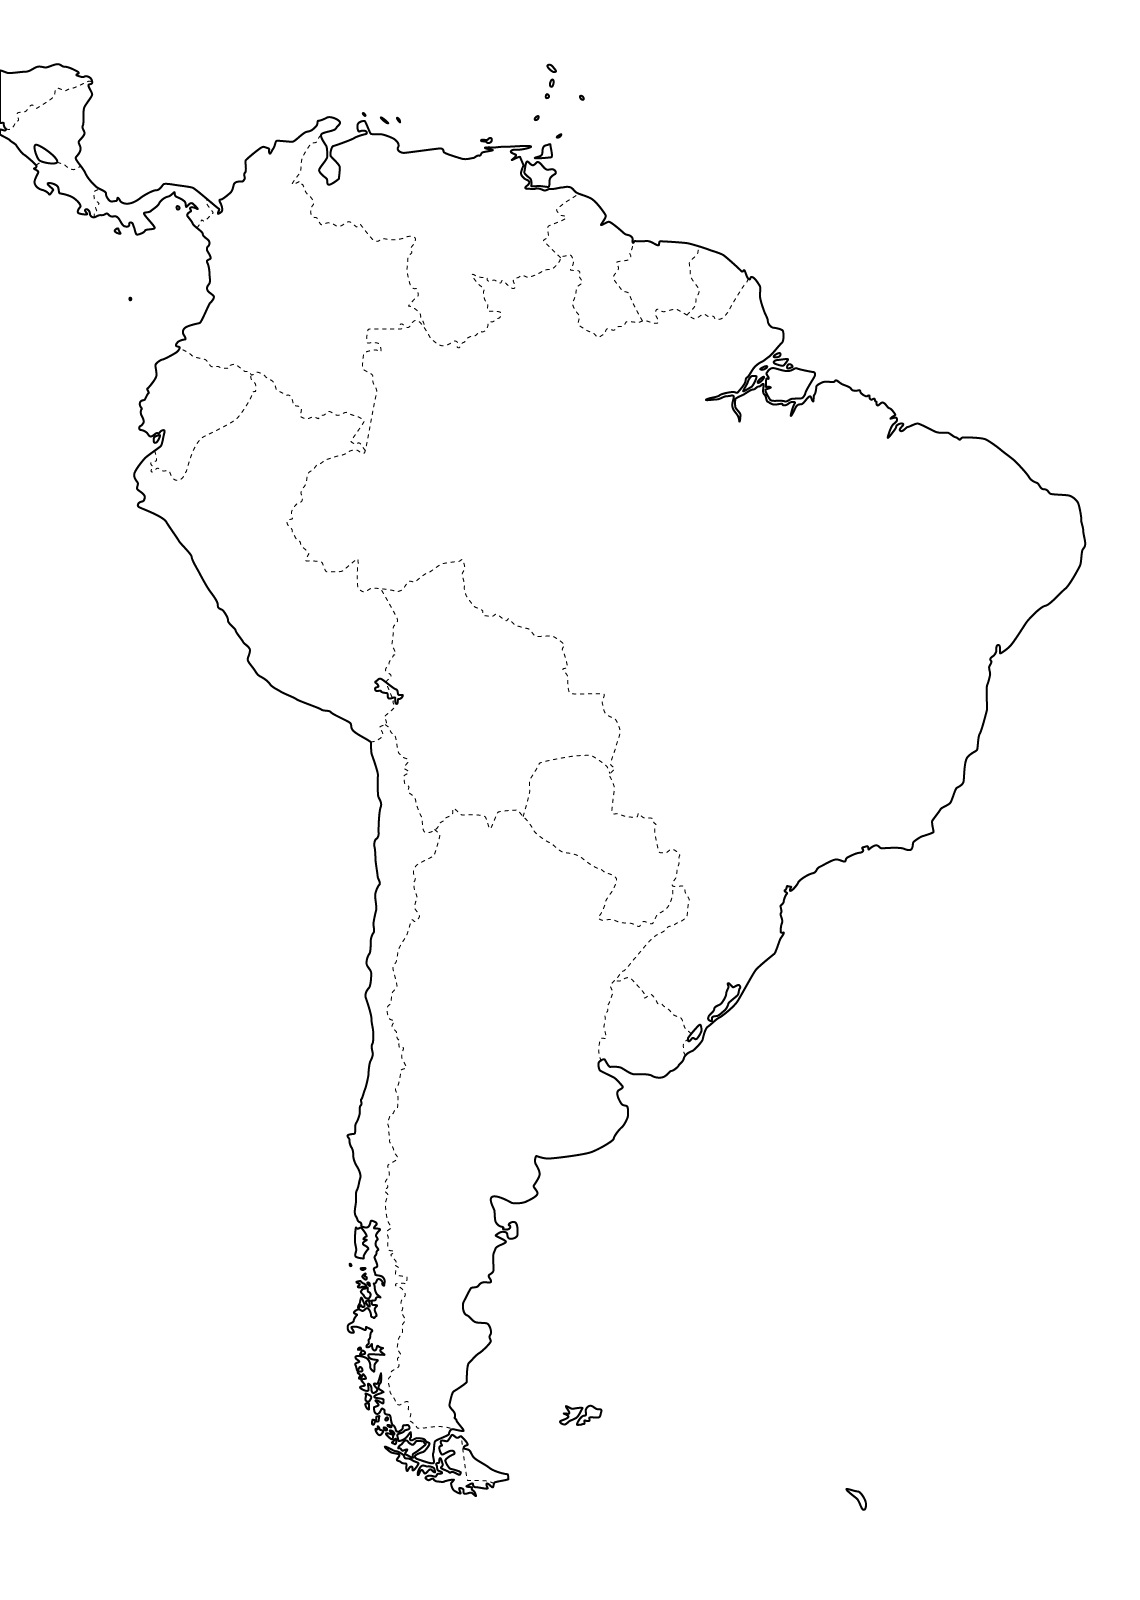 Slepá mapa - Jižní Amerika - hranice států